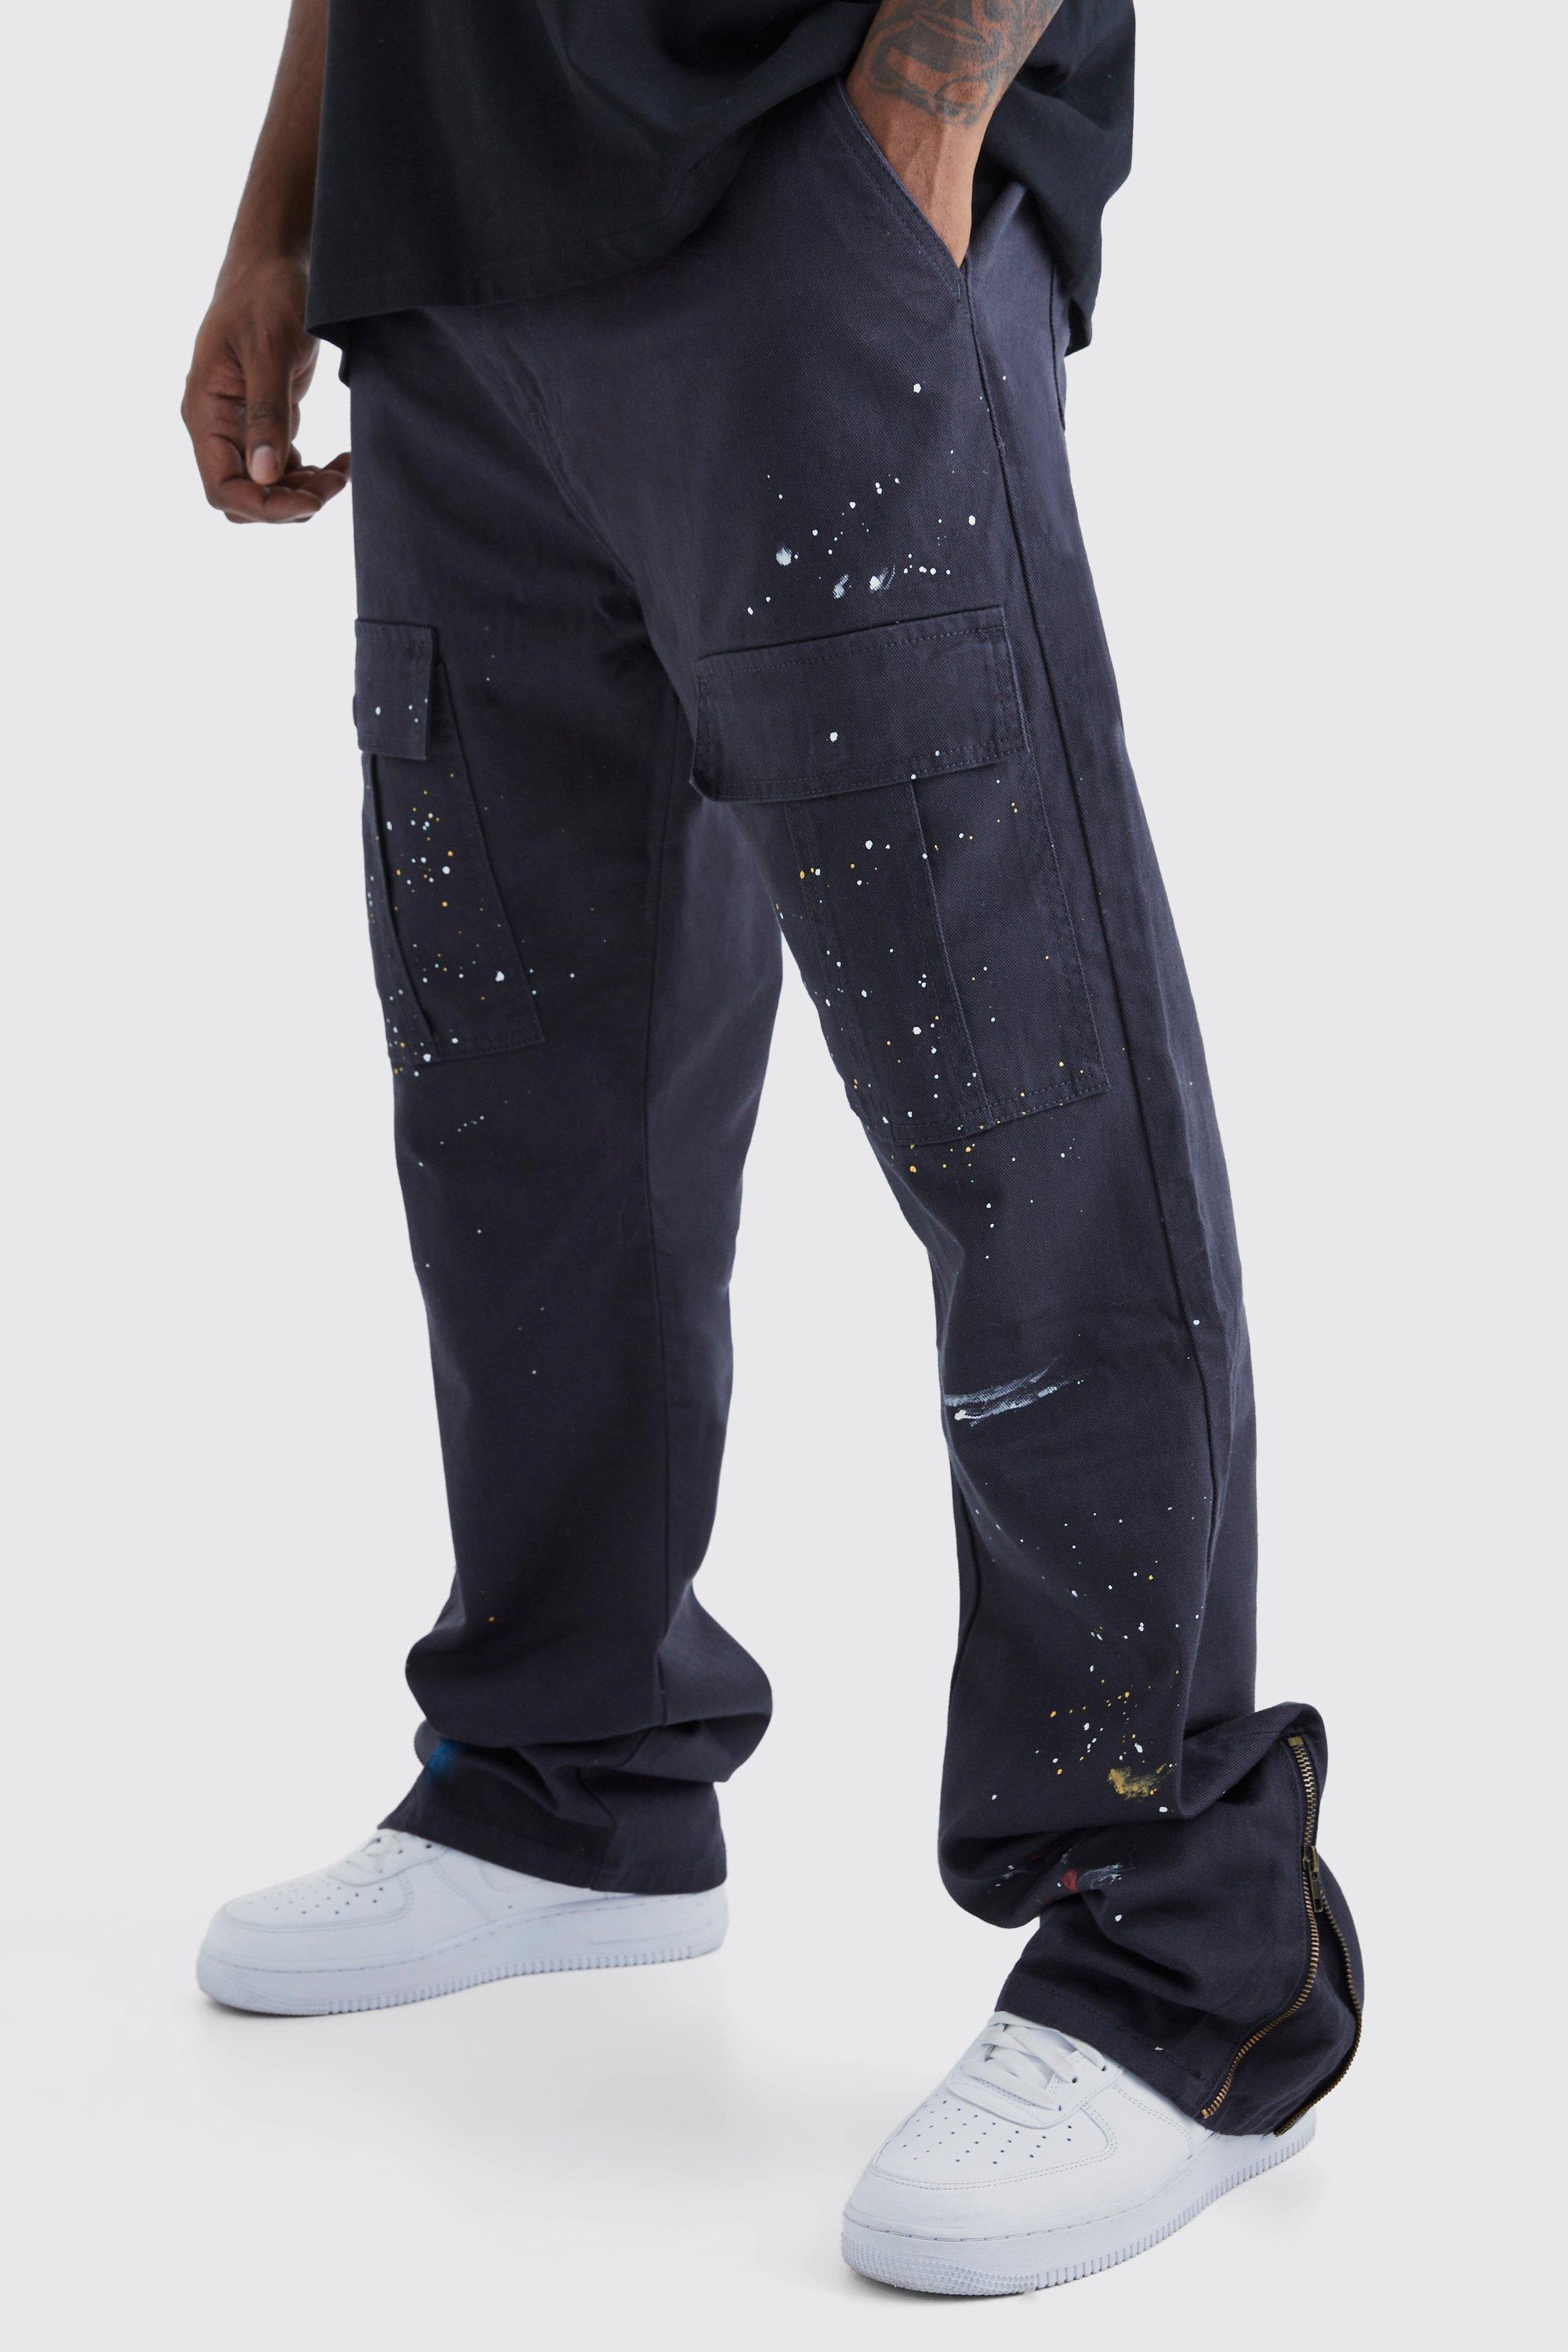 grande taille - pantalon cargo zippé à taches de peinture homme - gris - 40, gris